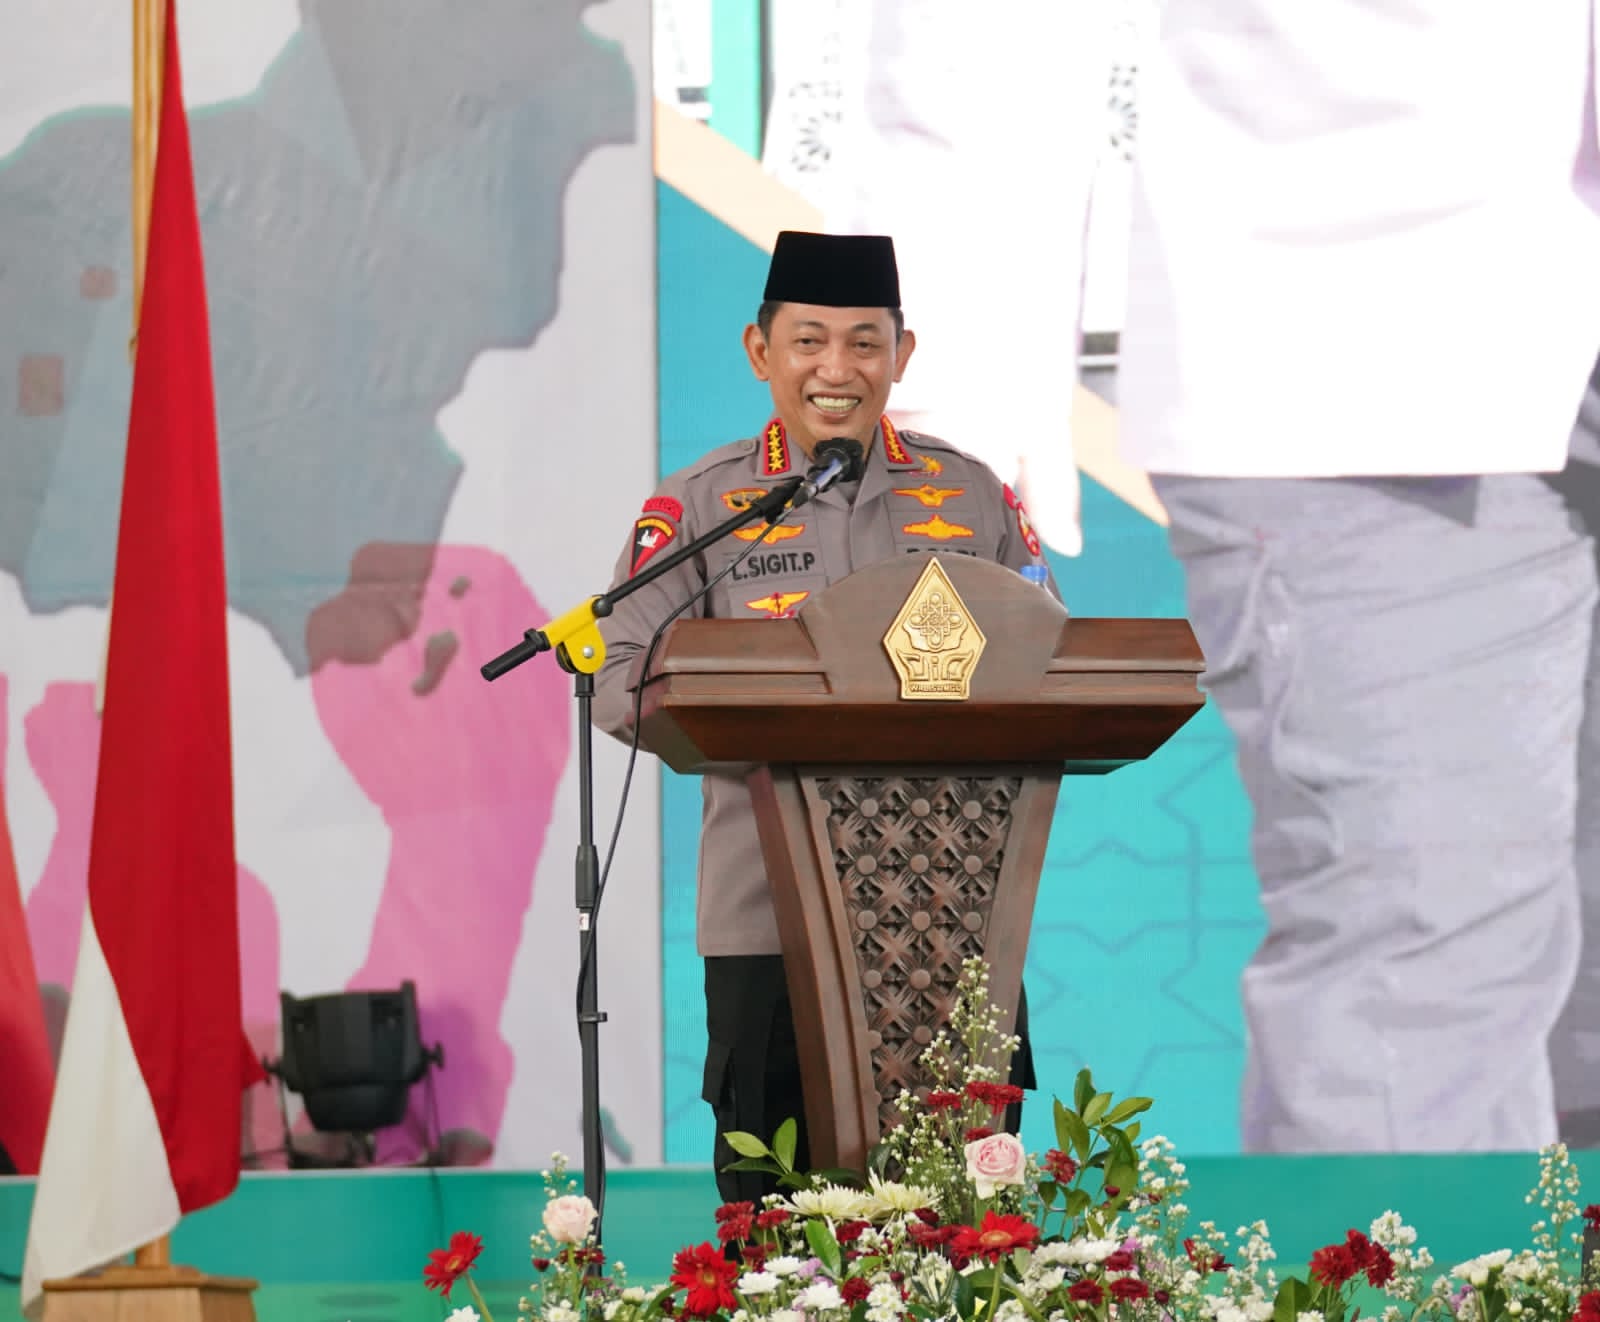 Kapolri Orasi Kebangsaan Sumpah Pemuda, Persatuan dan Kesatuan Wujudkan Indonesia Emas 2045